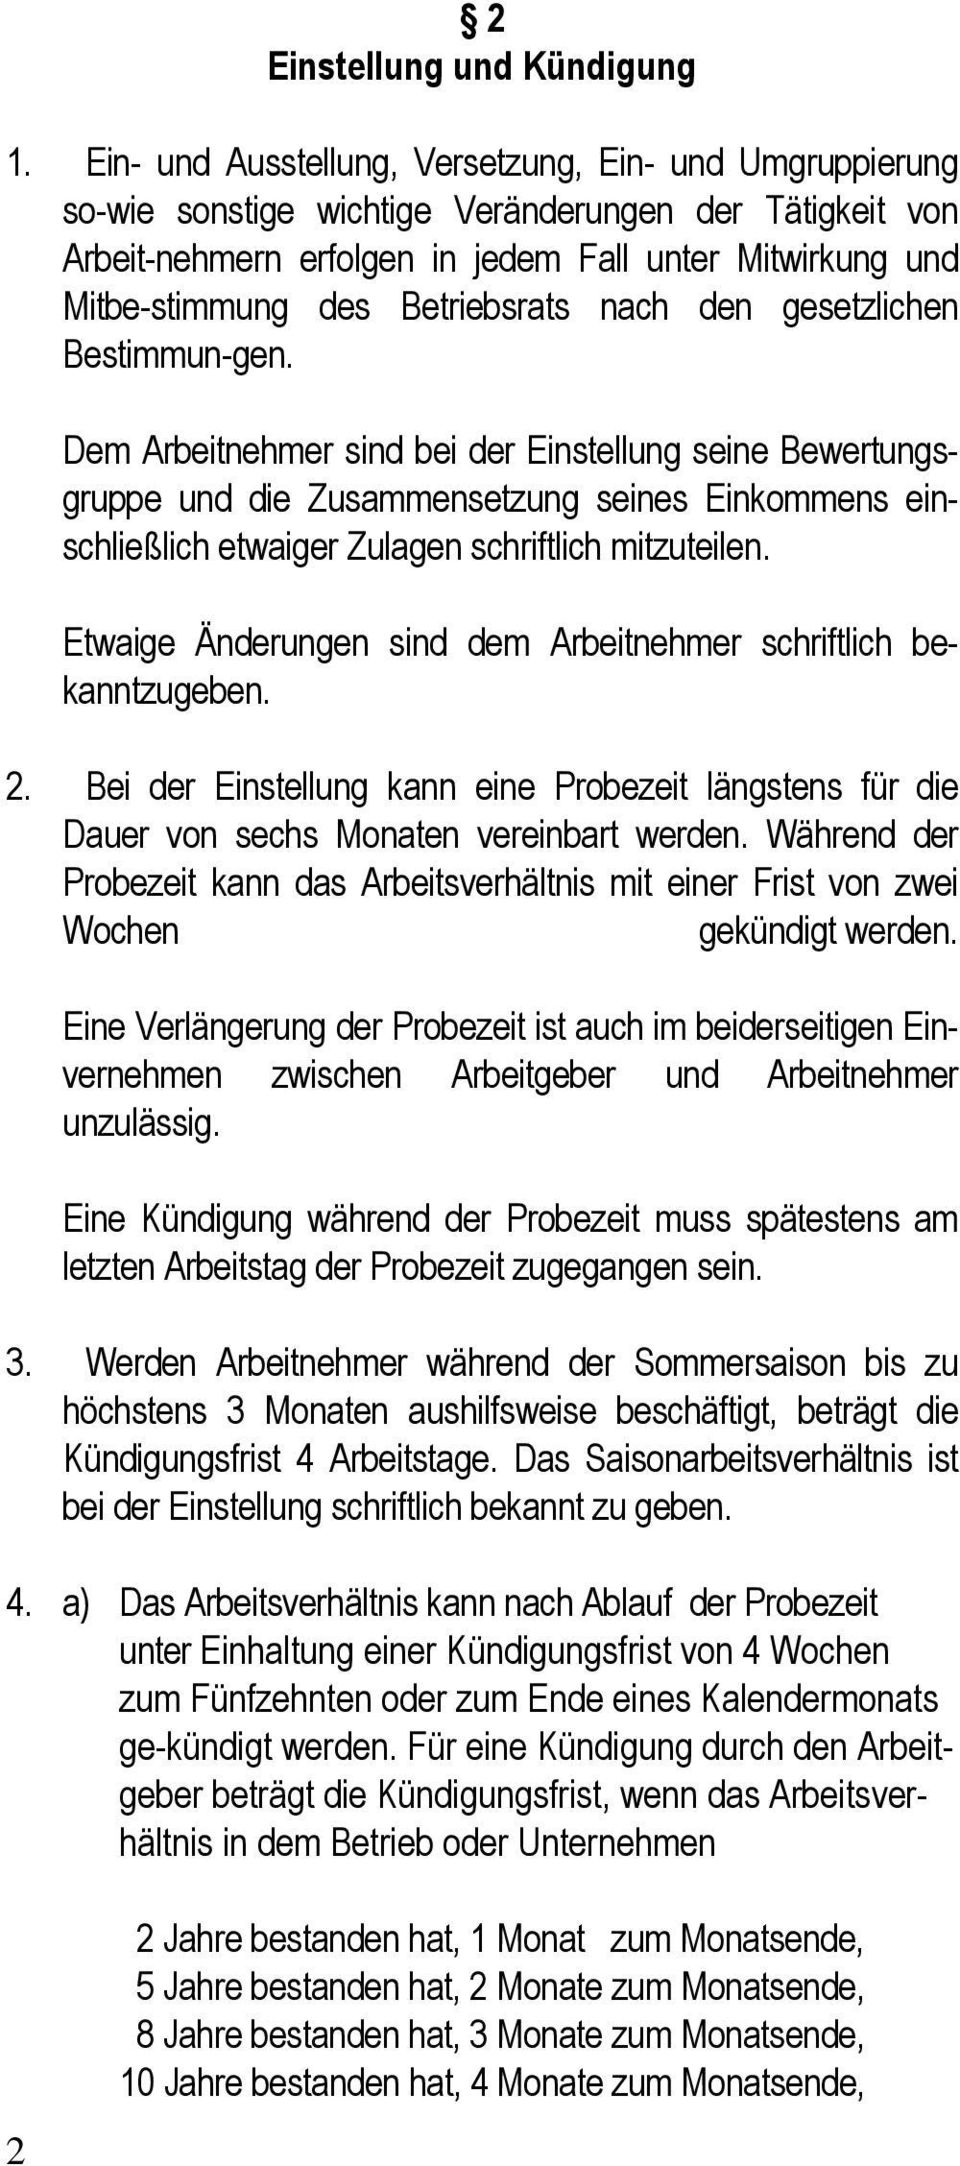 Manteltarifvertrag Für Das Braugewerbe In Bayern Zwischen Pdf